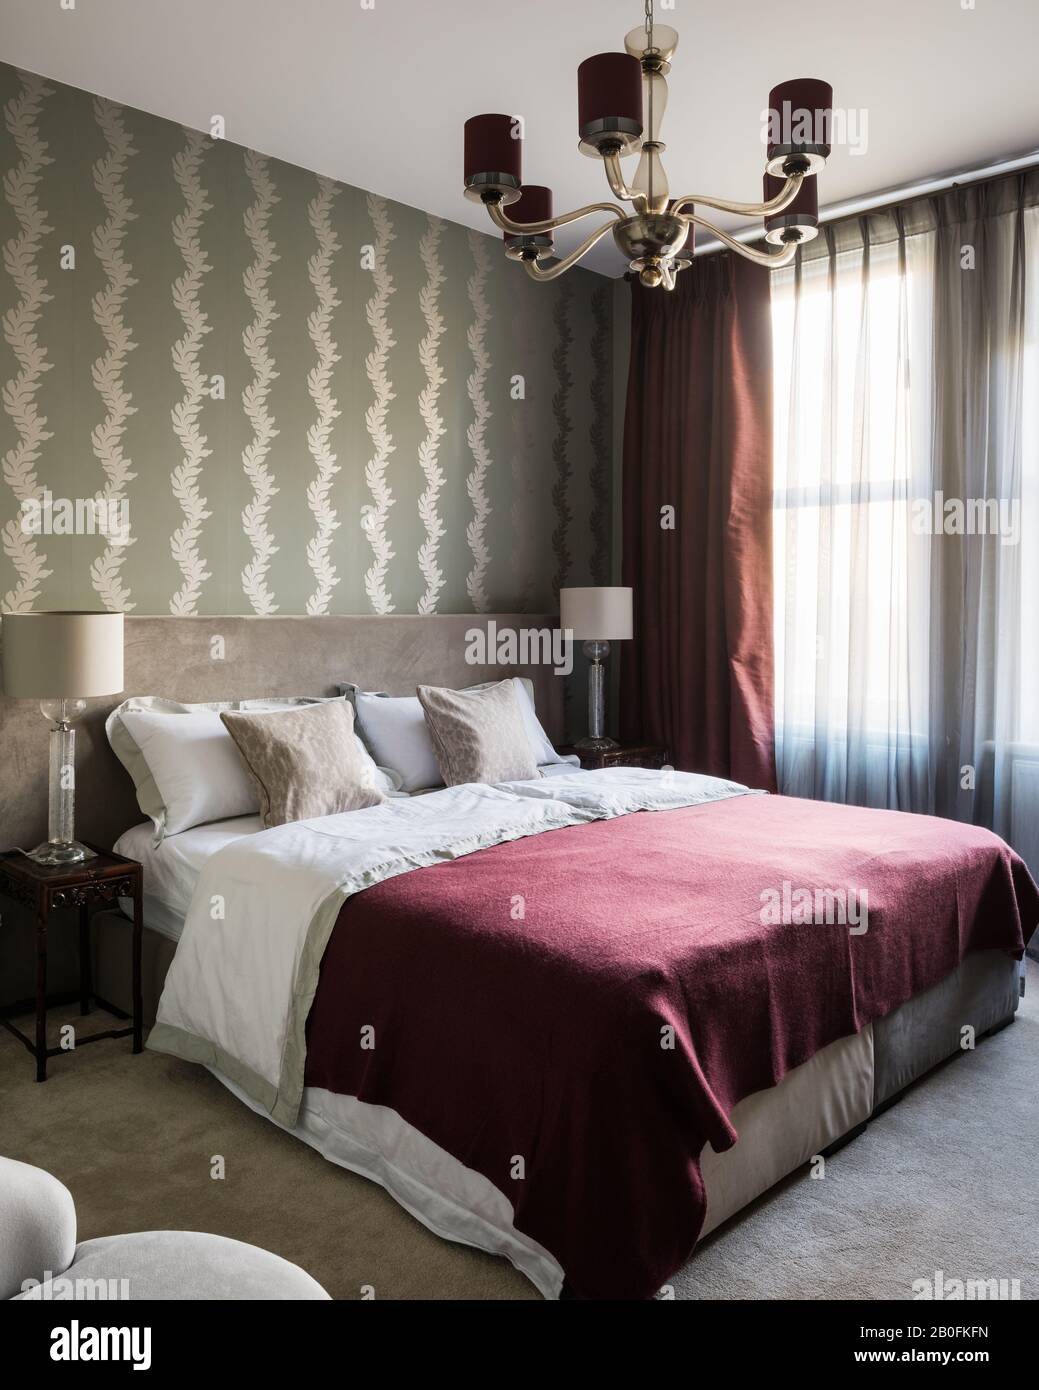 Burgunderdecke auf Doppelbett mit Vintage-Beleuchtung und geschlossenen Vorhängen Stockfoto